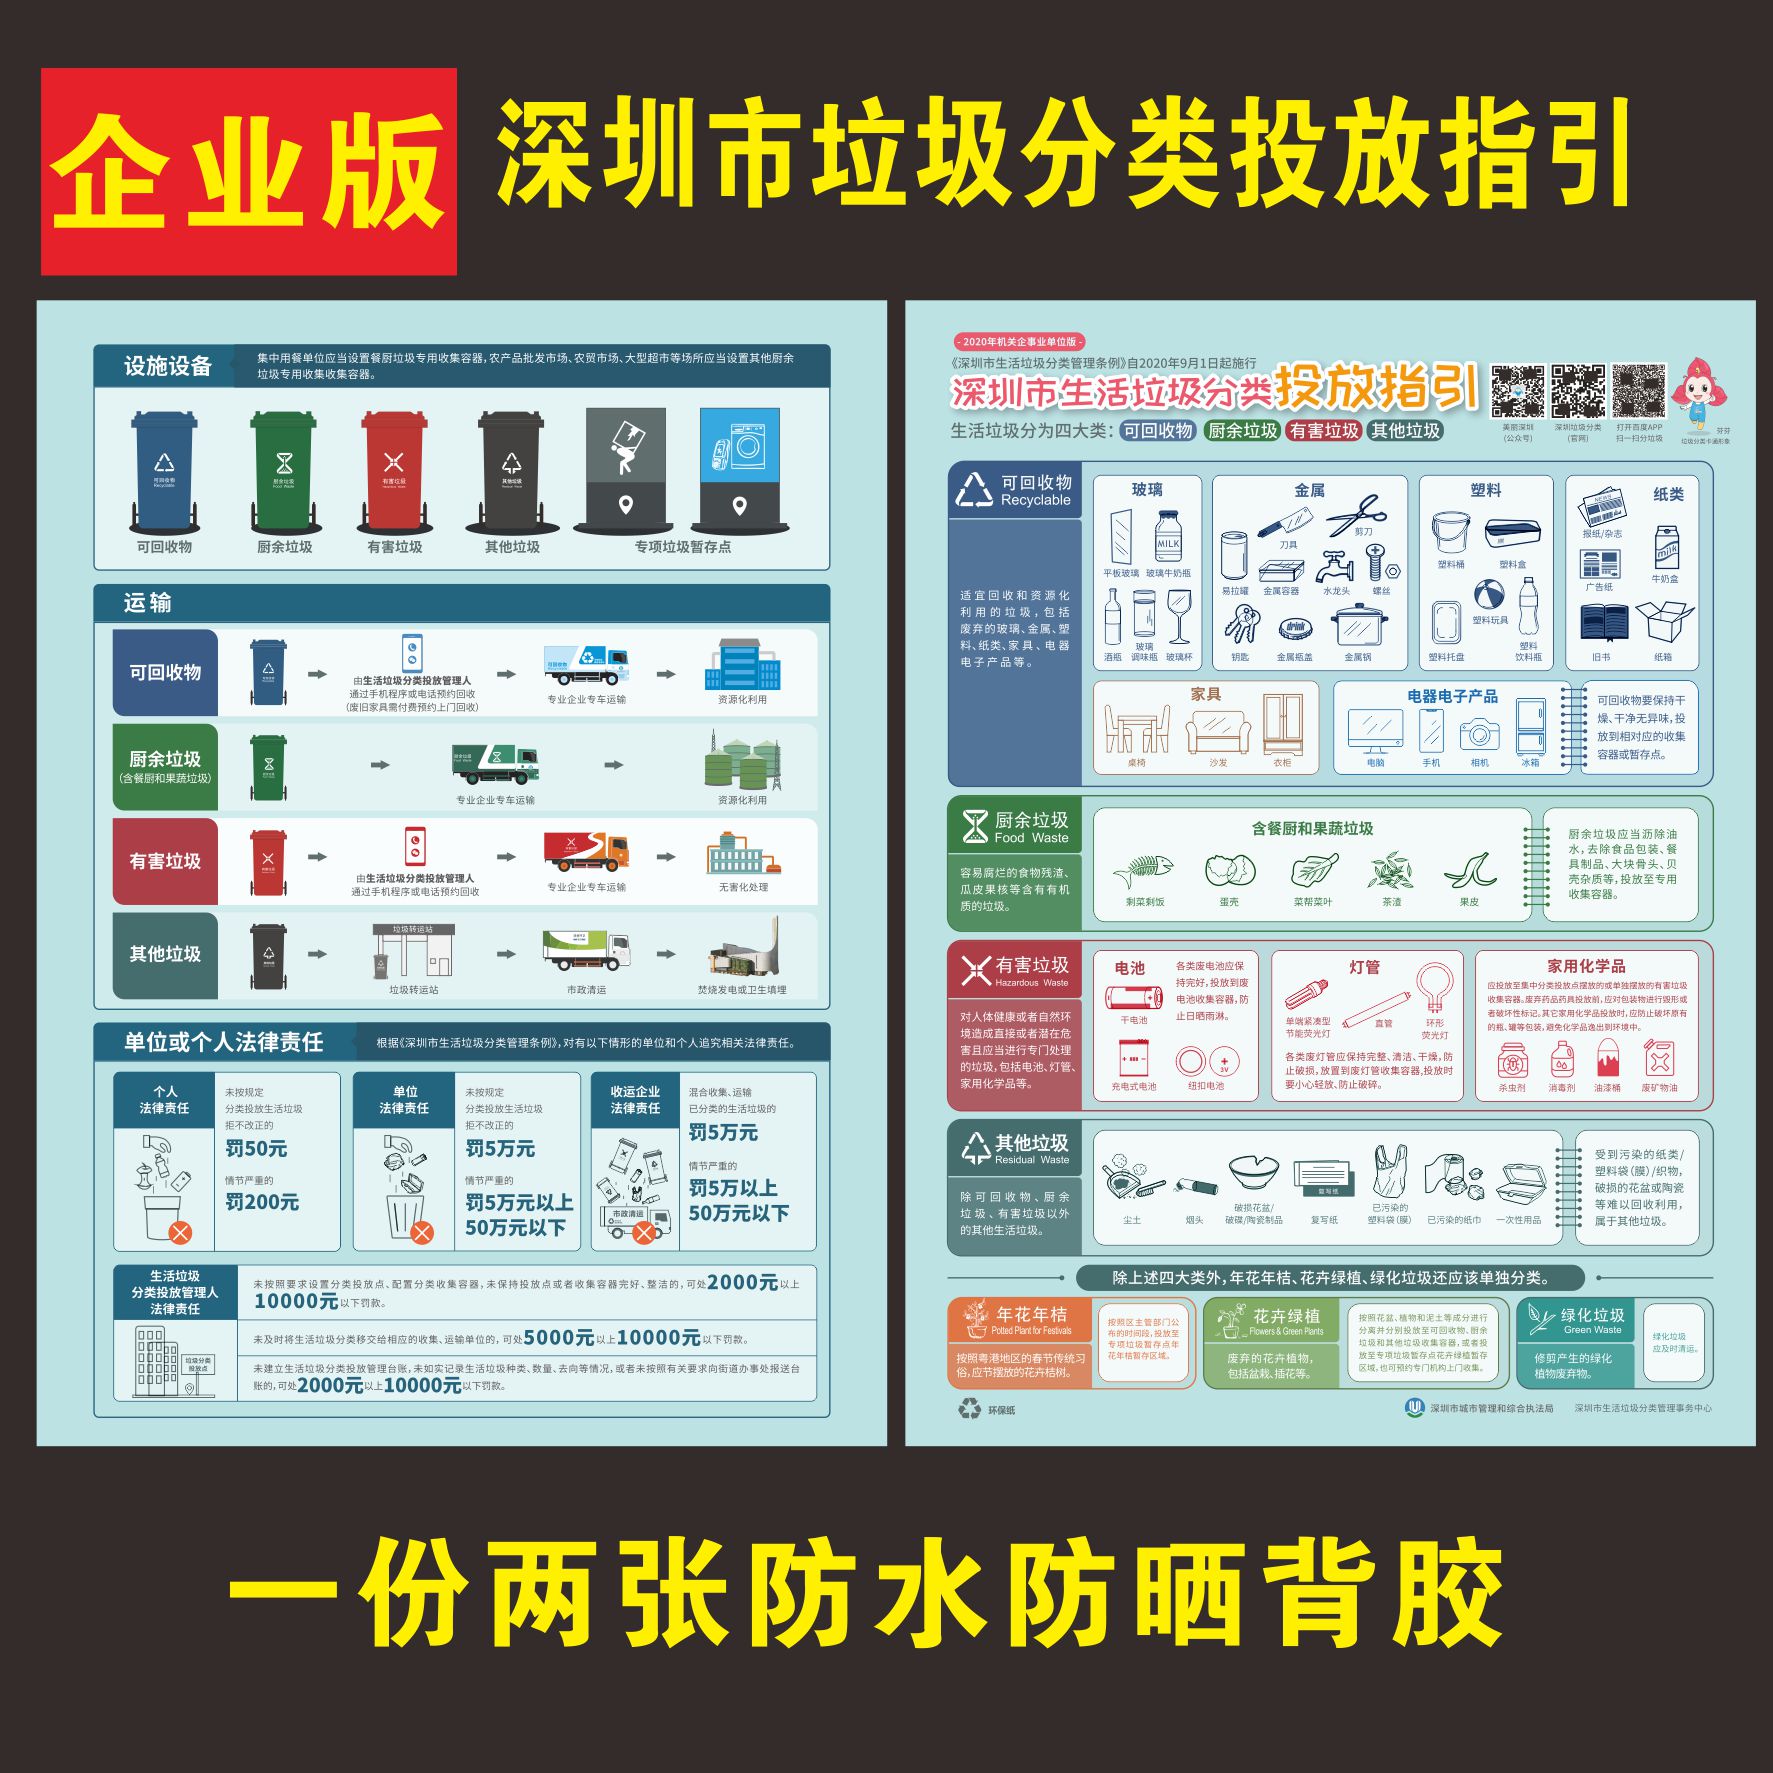 深圳垃圾分类投放指引宣传海报小区社区企业垃圾分类投放指南海报